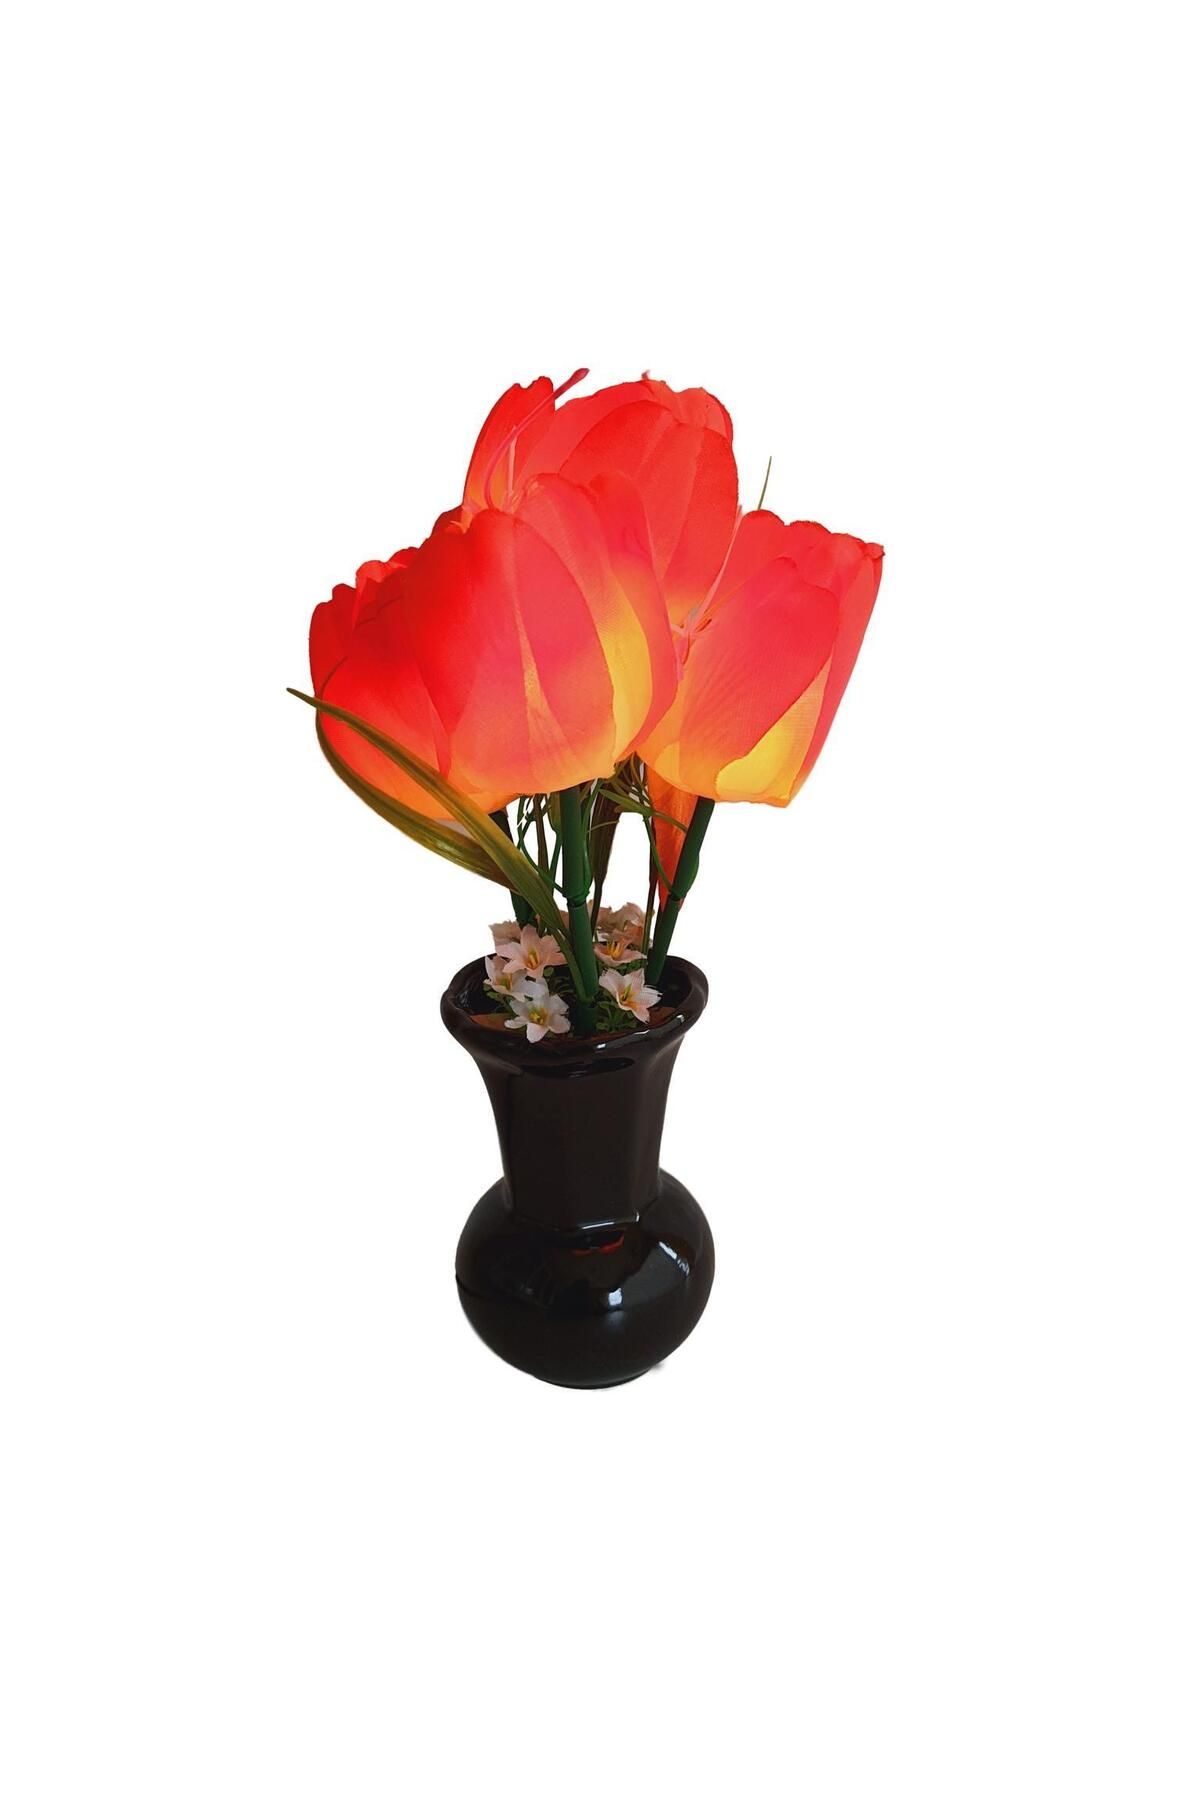 Hasyılmaz 90'lar Temalı Dekoratif Işıklı Yapay Çiçek 27cm (kırmızı-turuncu Lale)